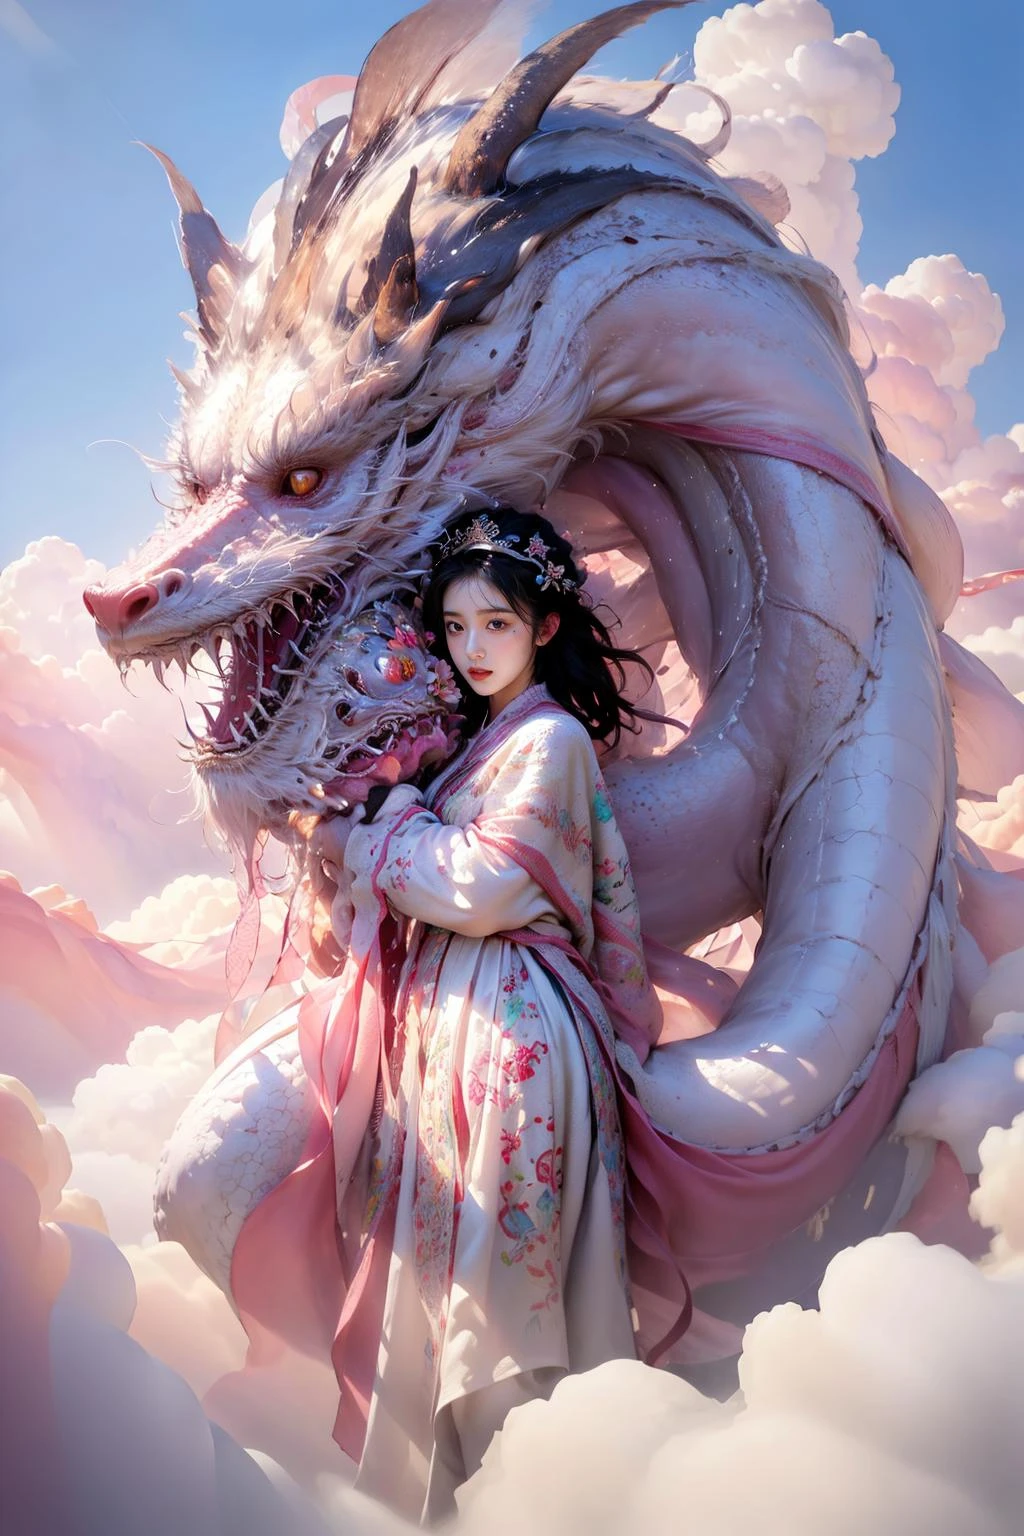 photo現実的,現実的,写真,傑作,最高品質,非常に詳細な,非常に詳細な CG ユニティ 8k 壁紙,1人の女の子,雲,ピンクのテーマ,ピンクと白のドラゴン,